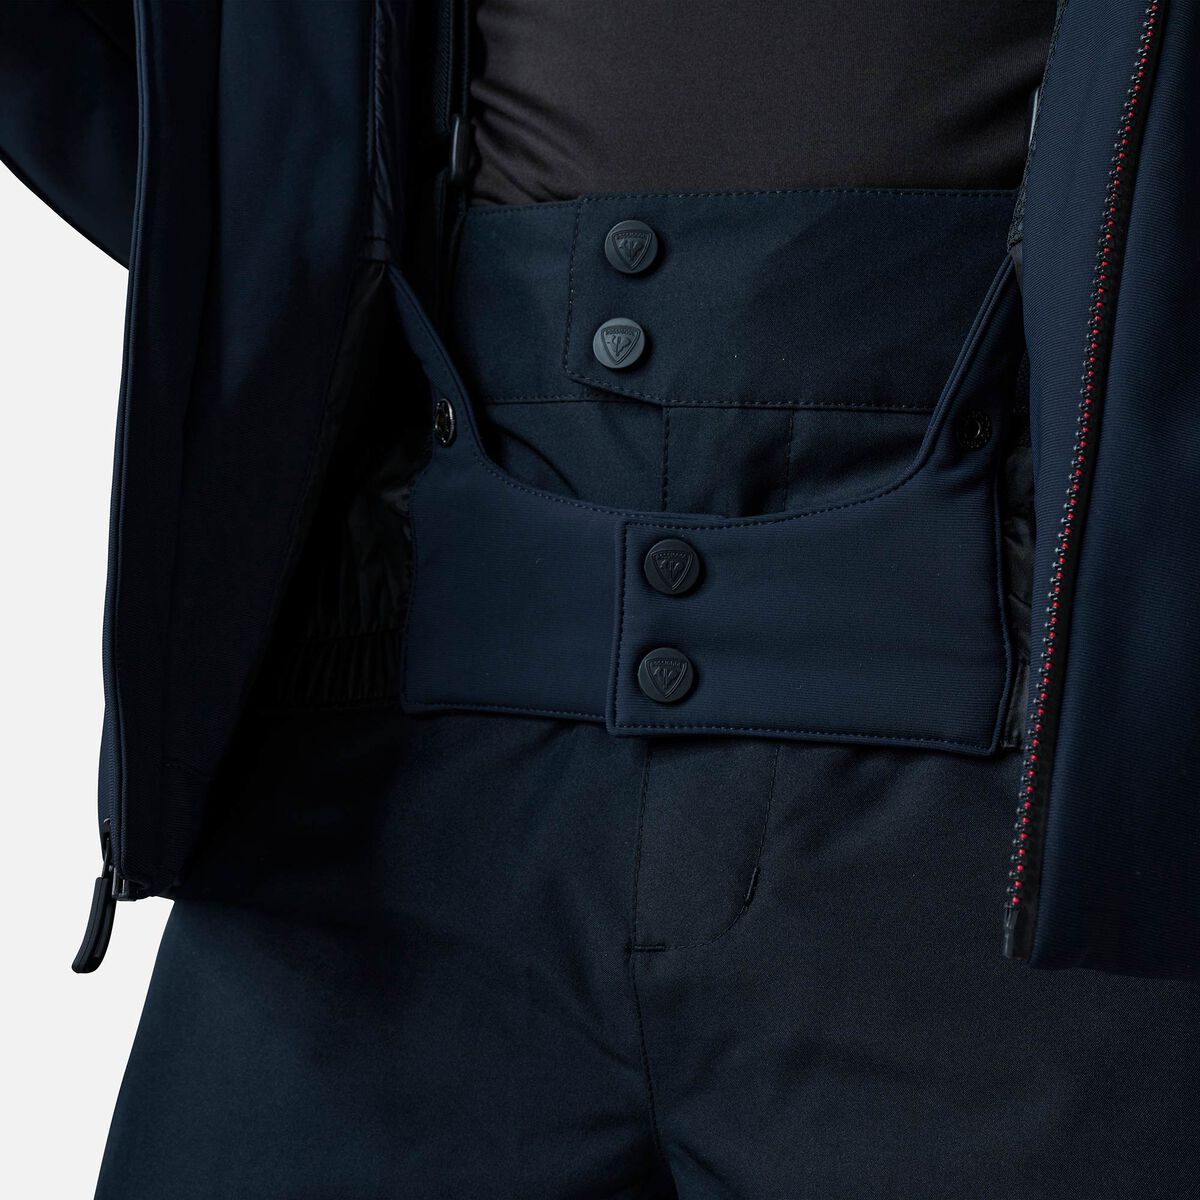 Rossignol Men's Versatile Jacket black